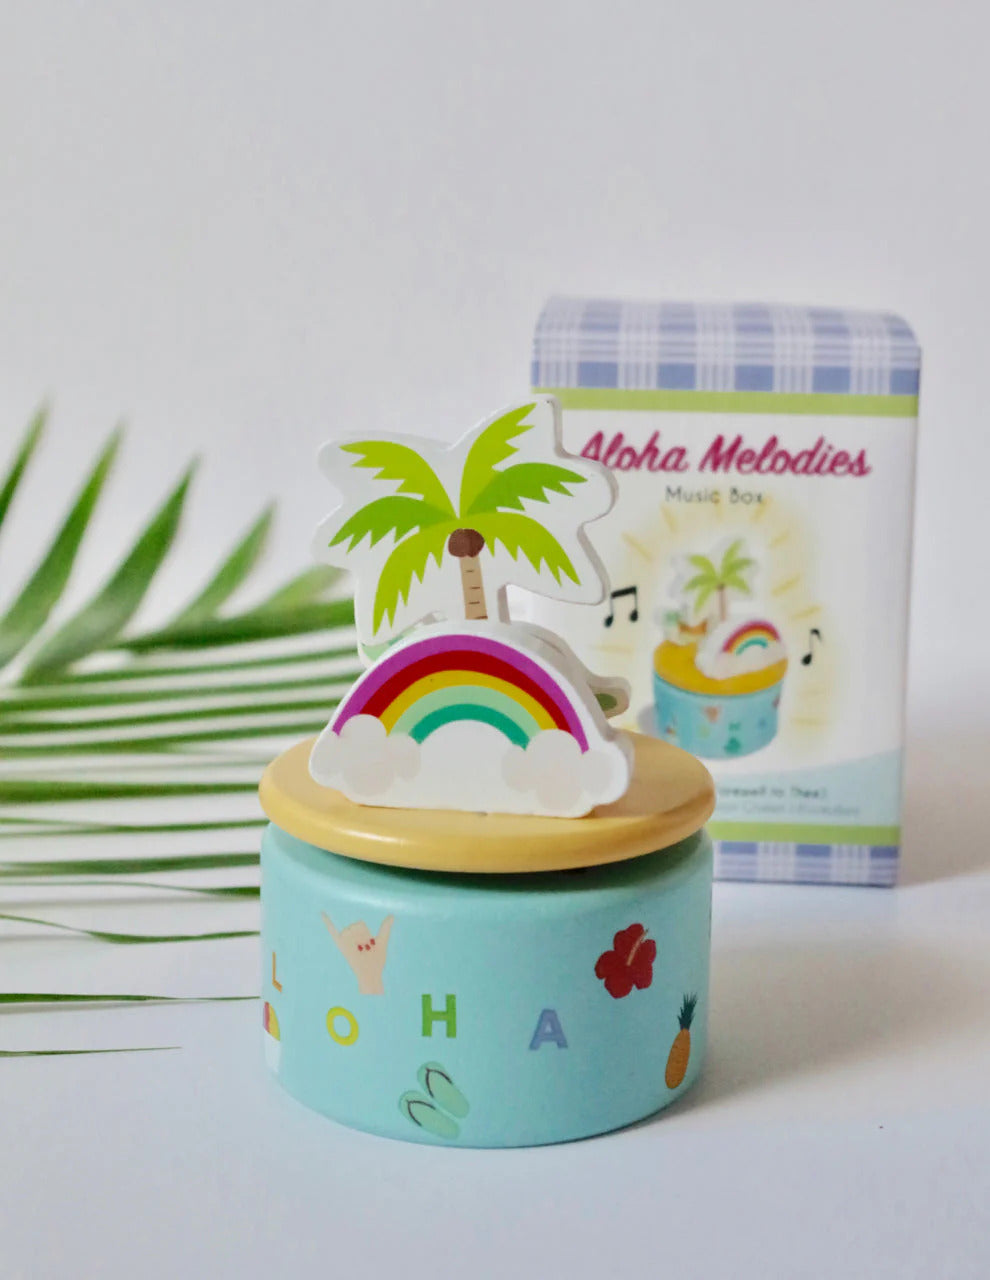 Pop-Up Mākeke - Keiki Kaukau - Aloha Melodies Music Box - Front View